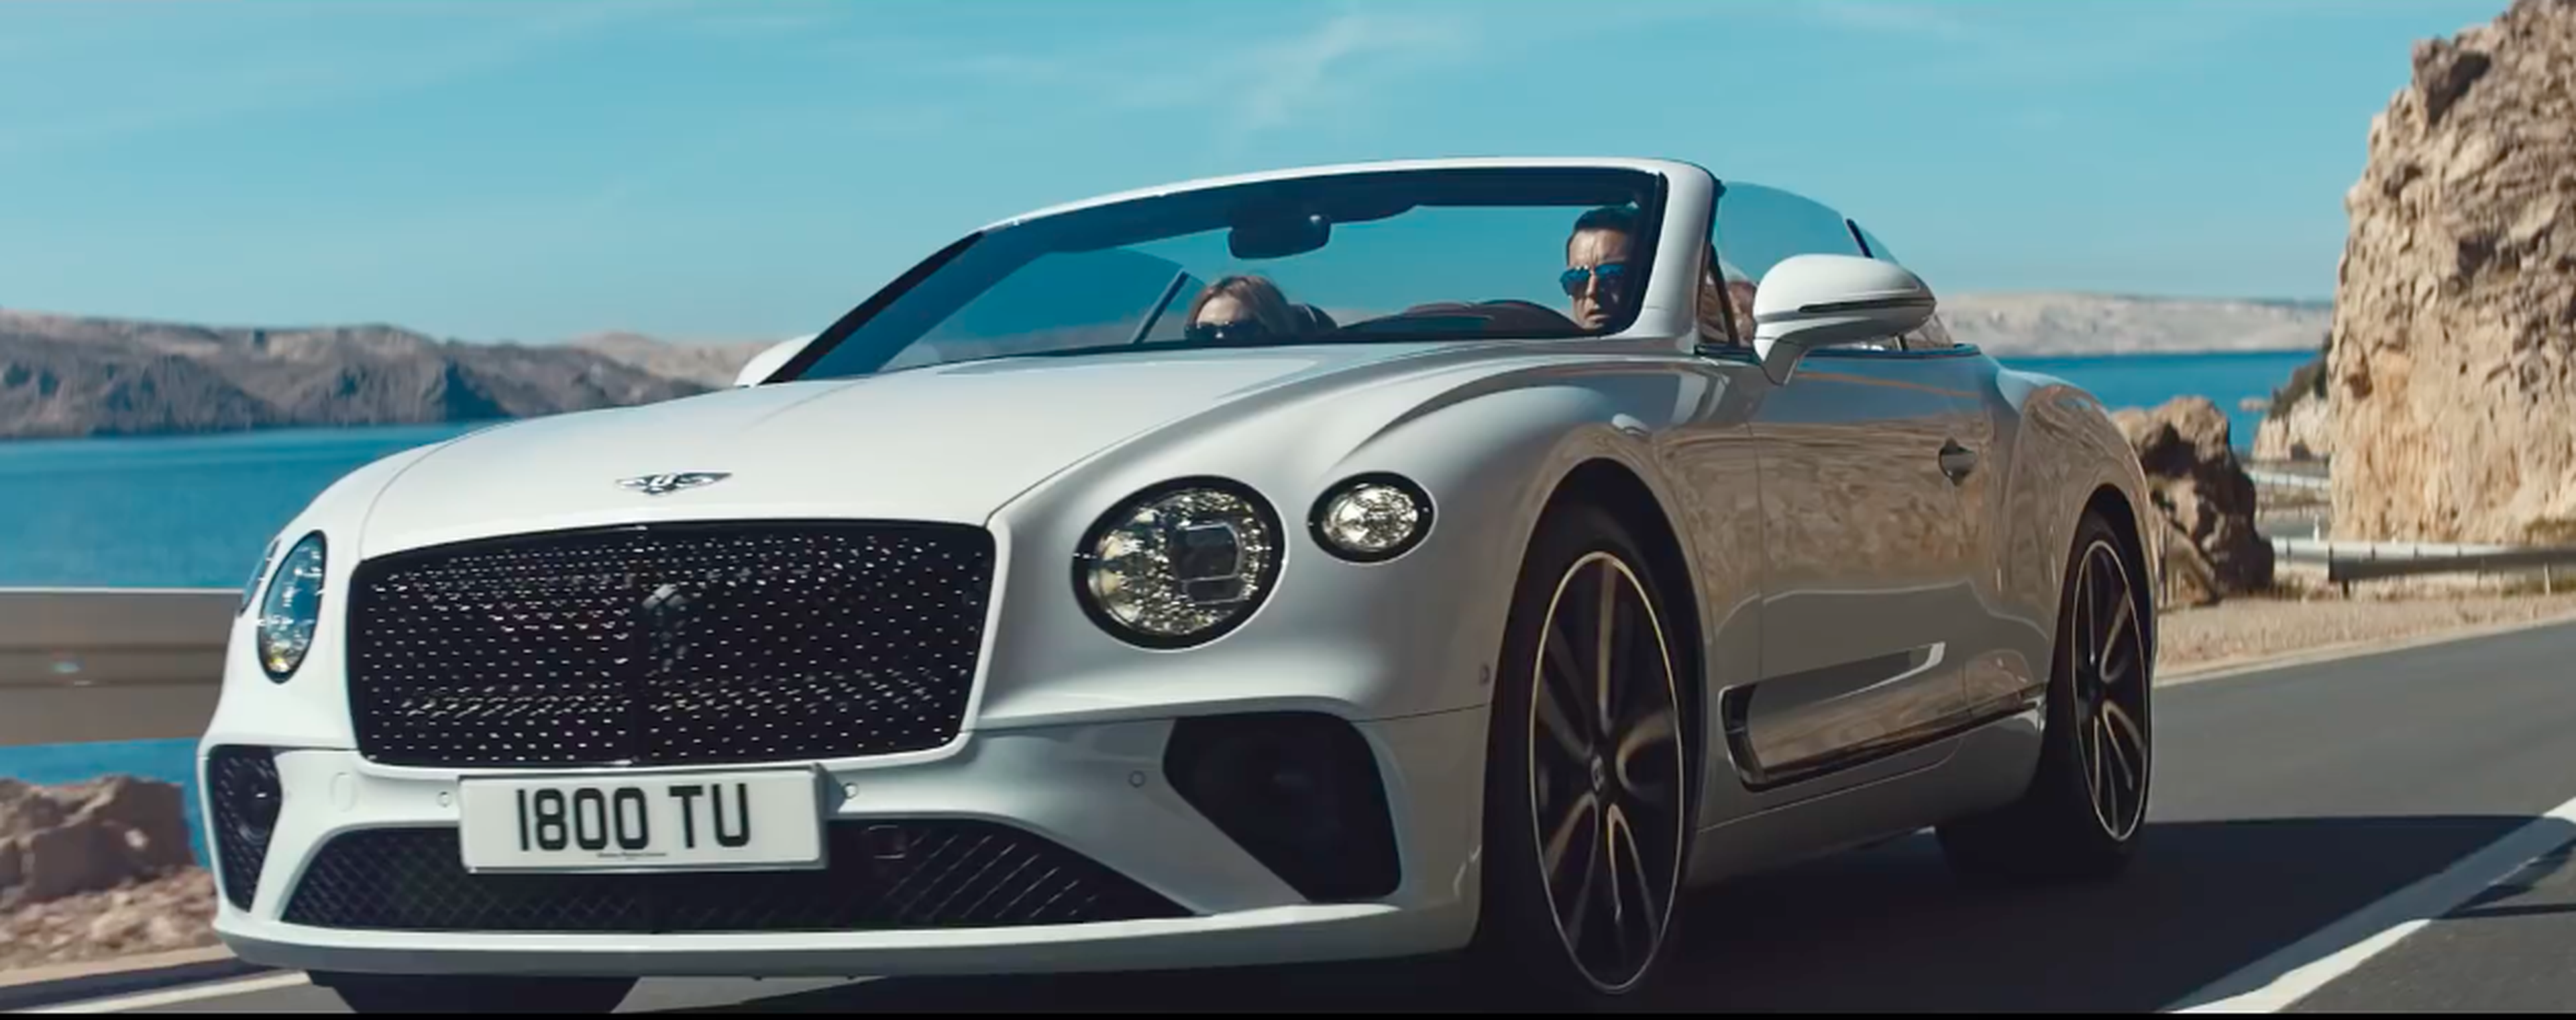 VÍDEO: Esta es la pasada de Bentley Continental GT Convertible 2019 con el que estás soñando